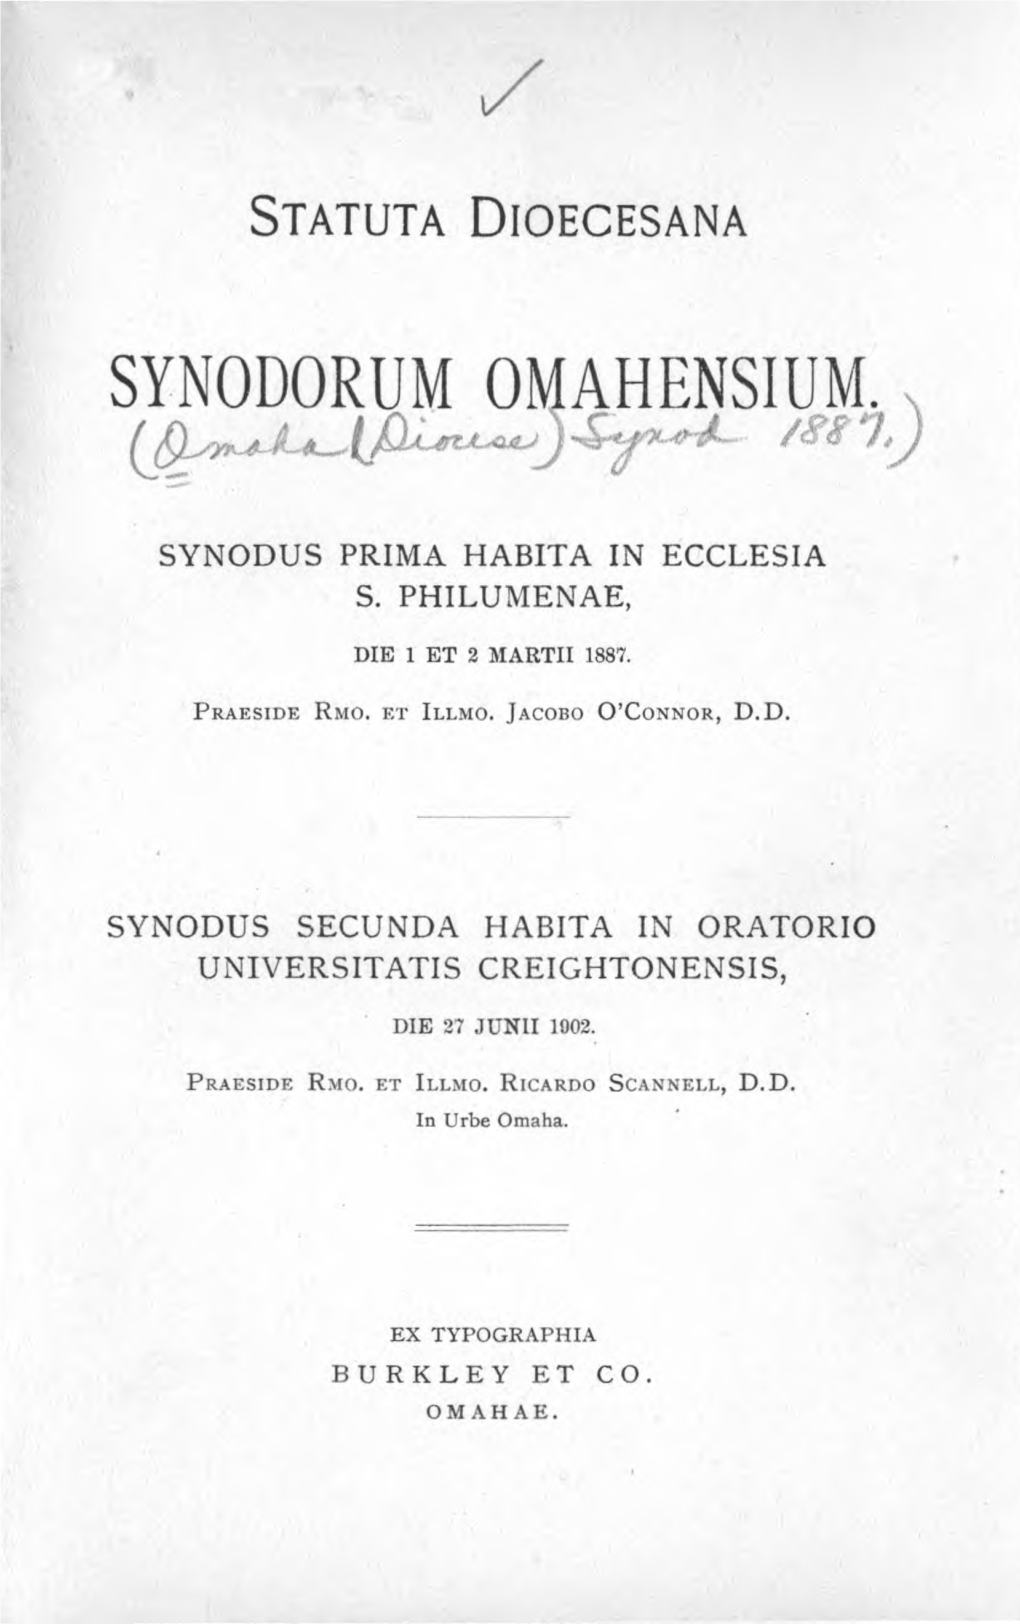 Synodorum Omahensium